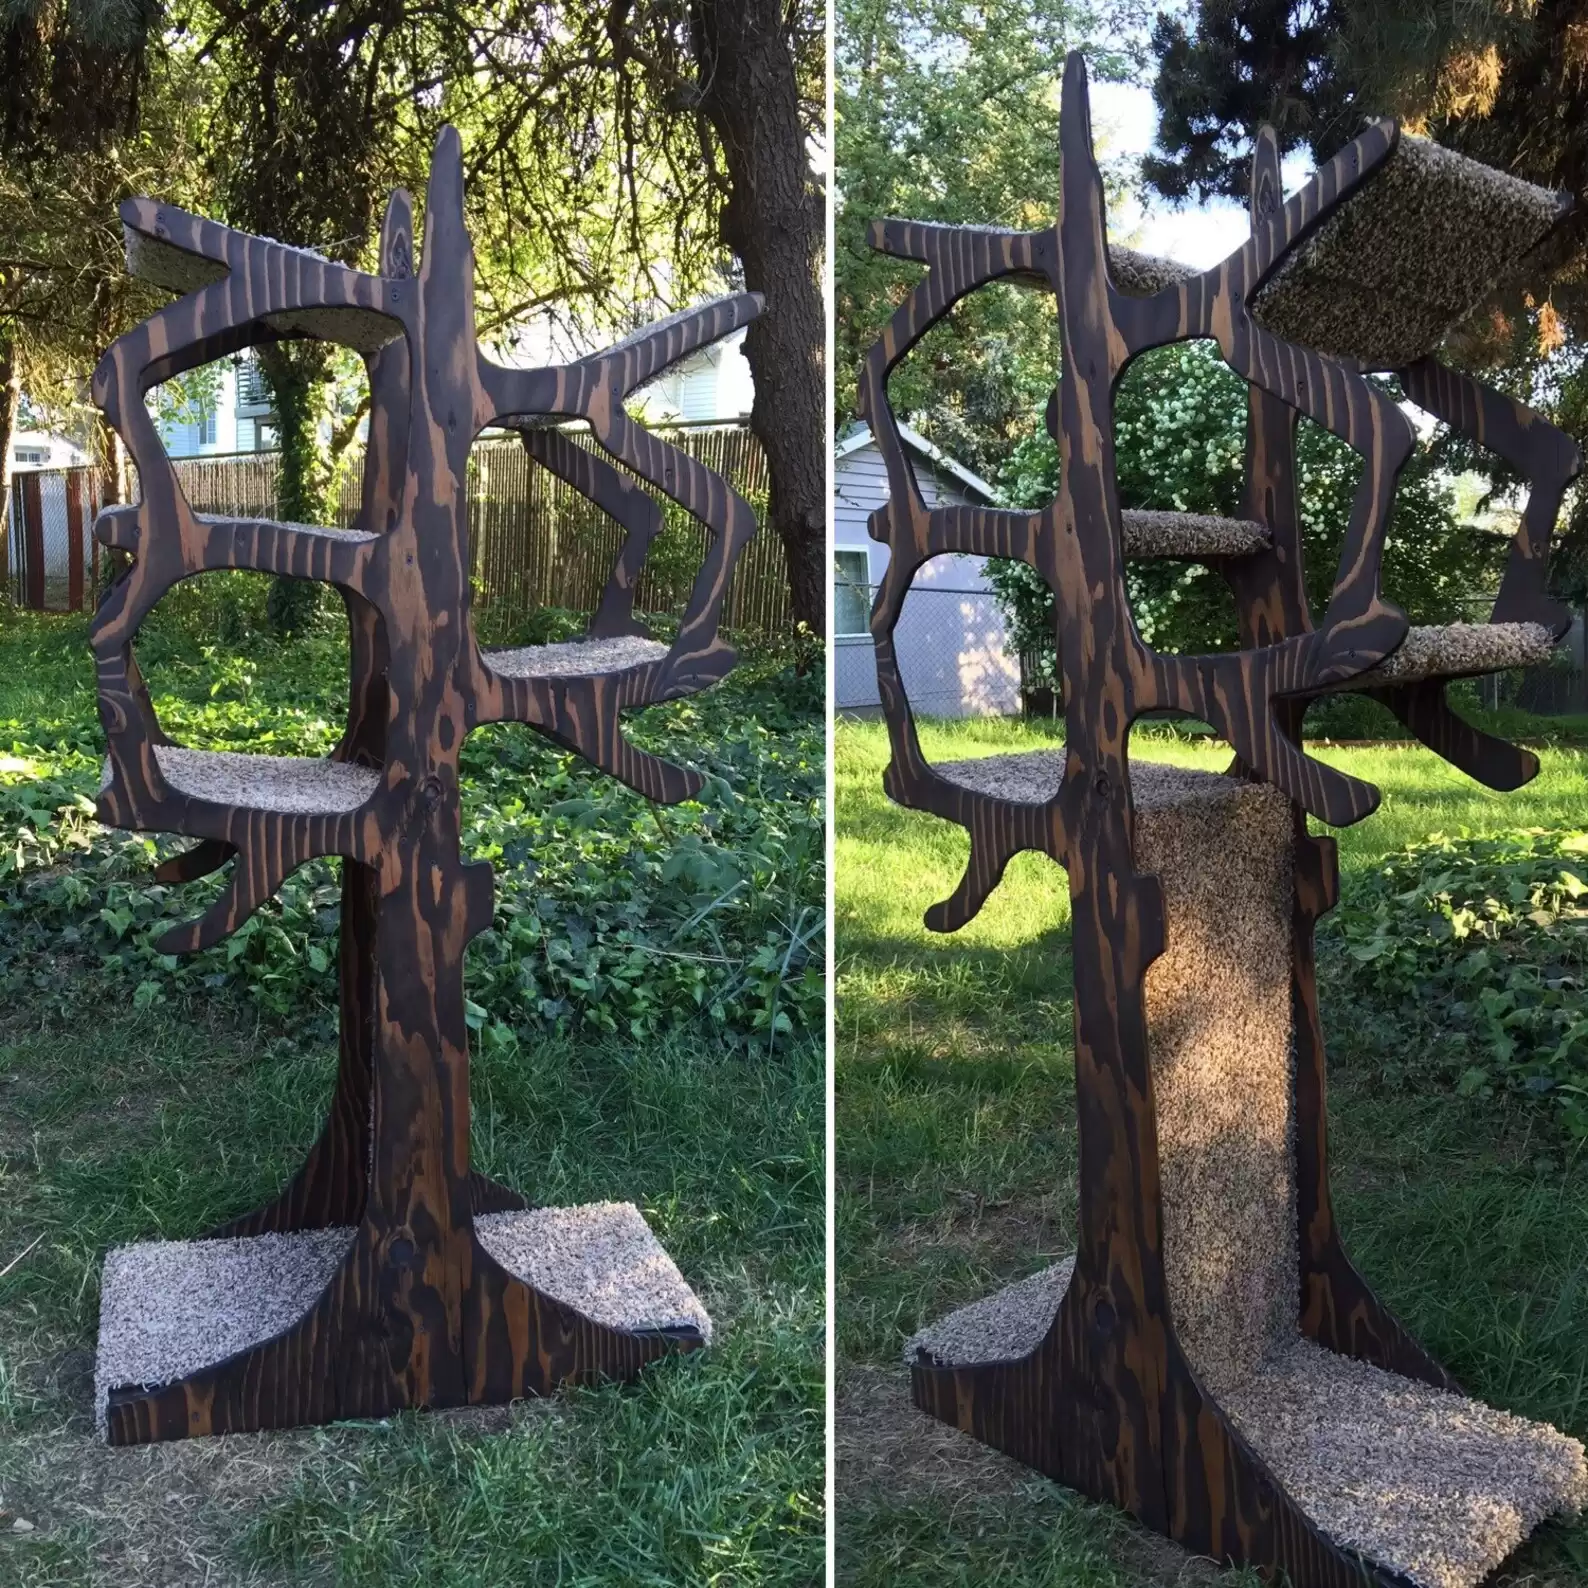 The Cat Tree Shaped Like a Tree